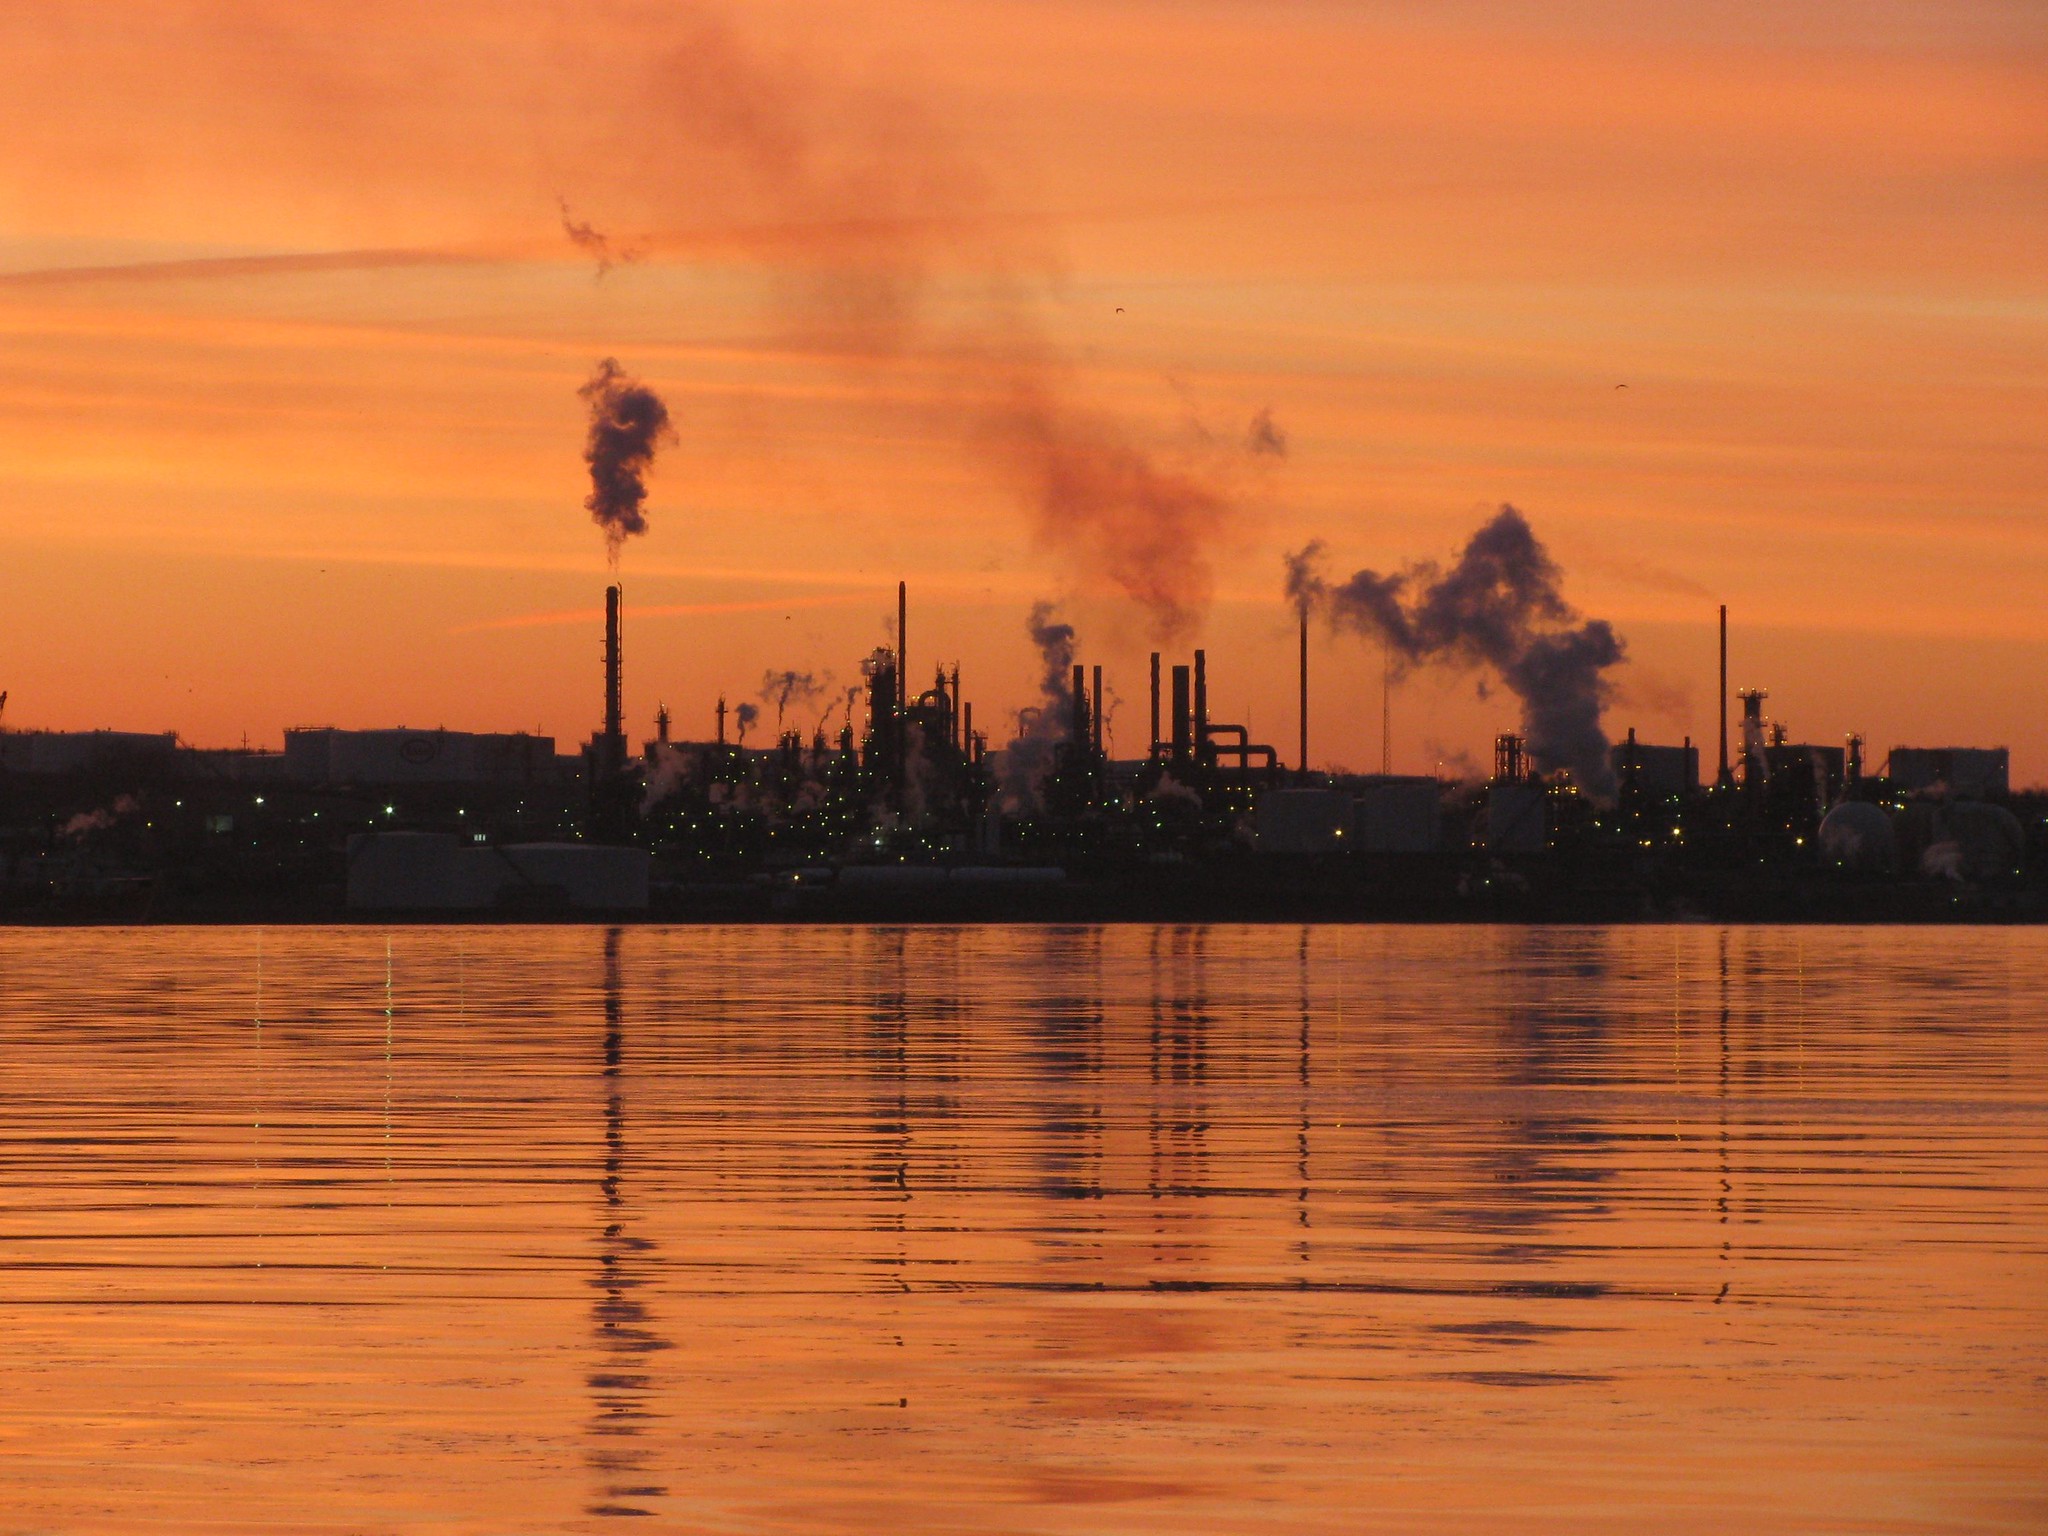 Foto van een olieraffinaderij bij zonsopgang, met rook die uit de schoorstenen komt.